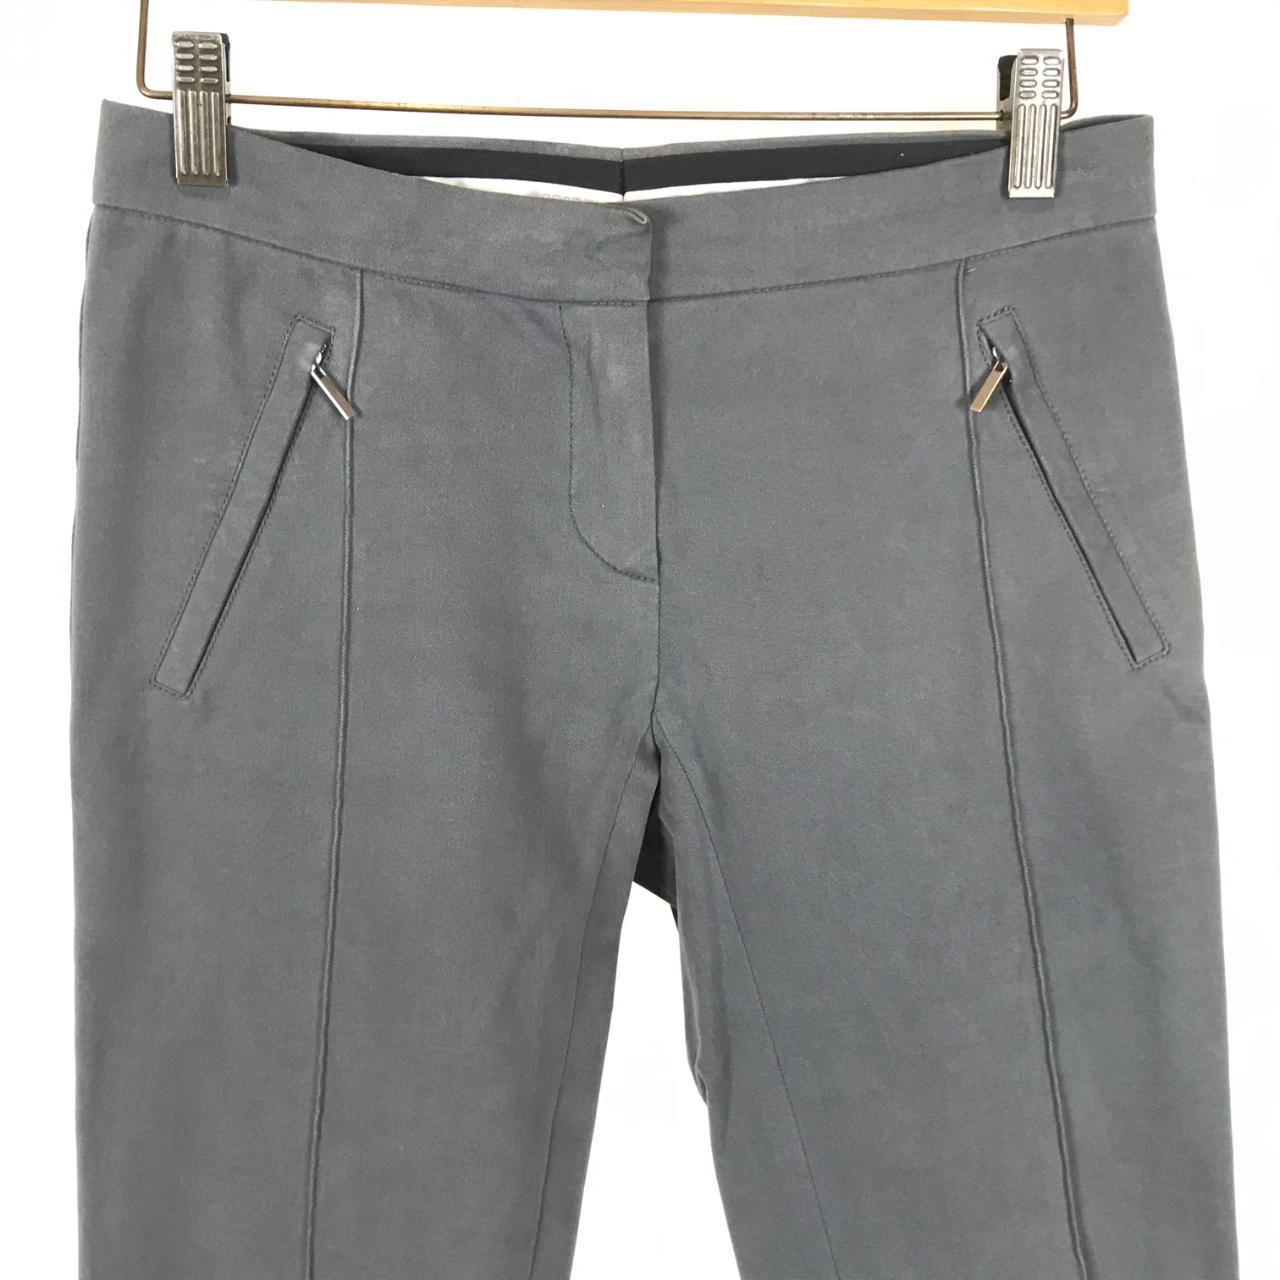 Women's Grey Trousers (2)